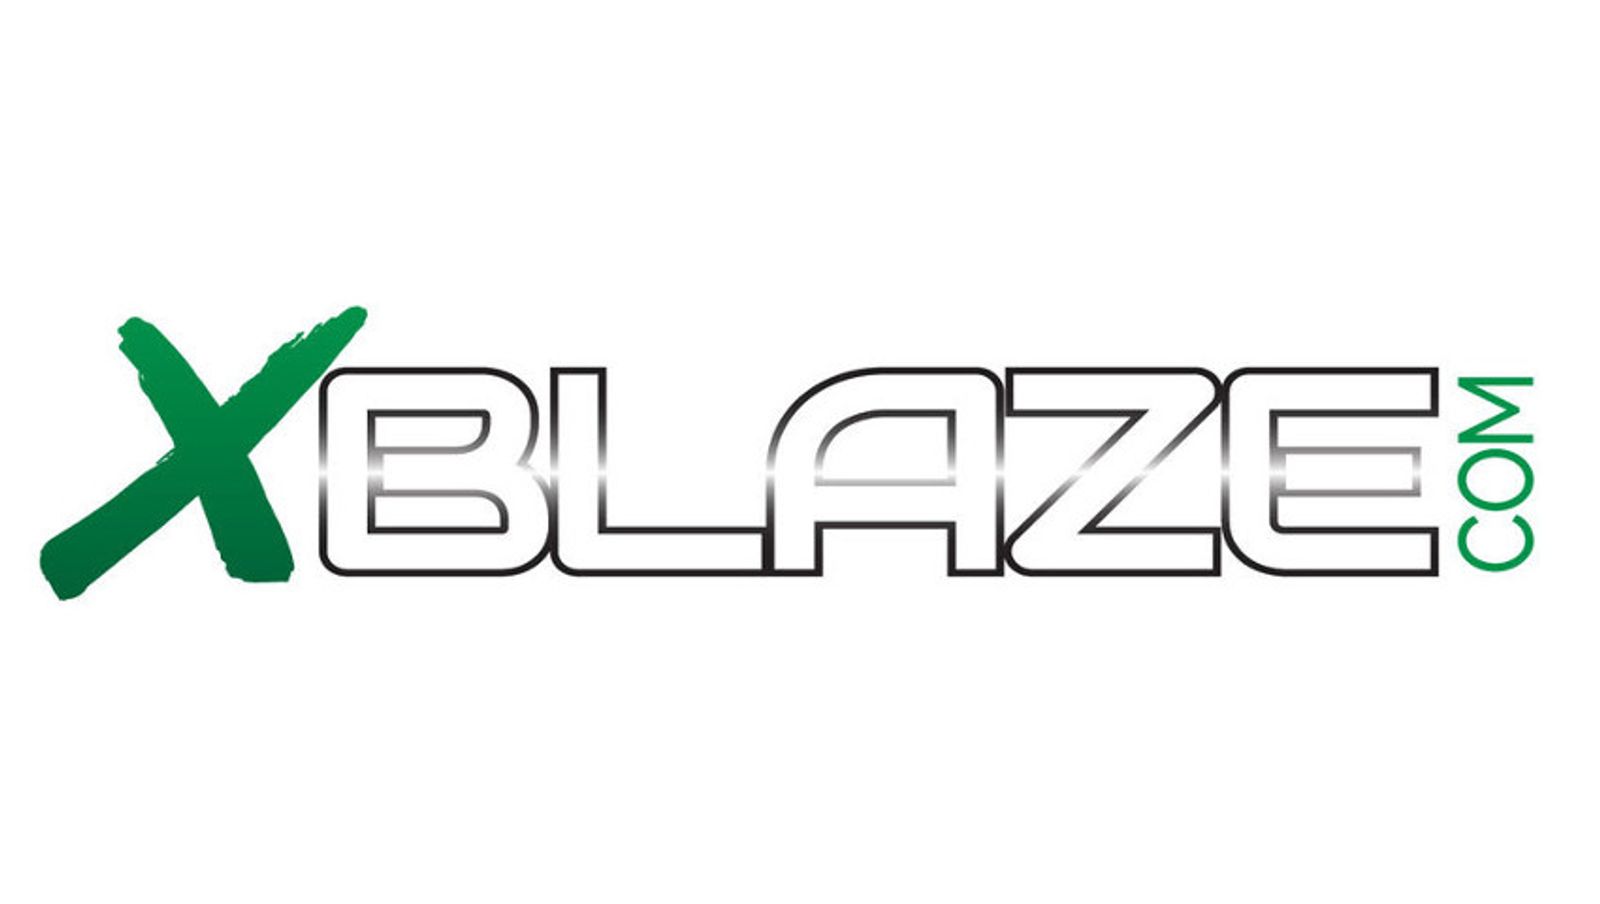 XBLAZE Announces Official Launch